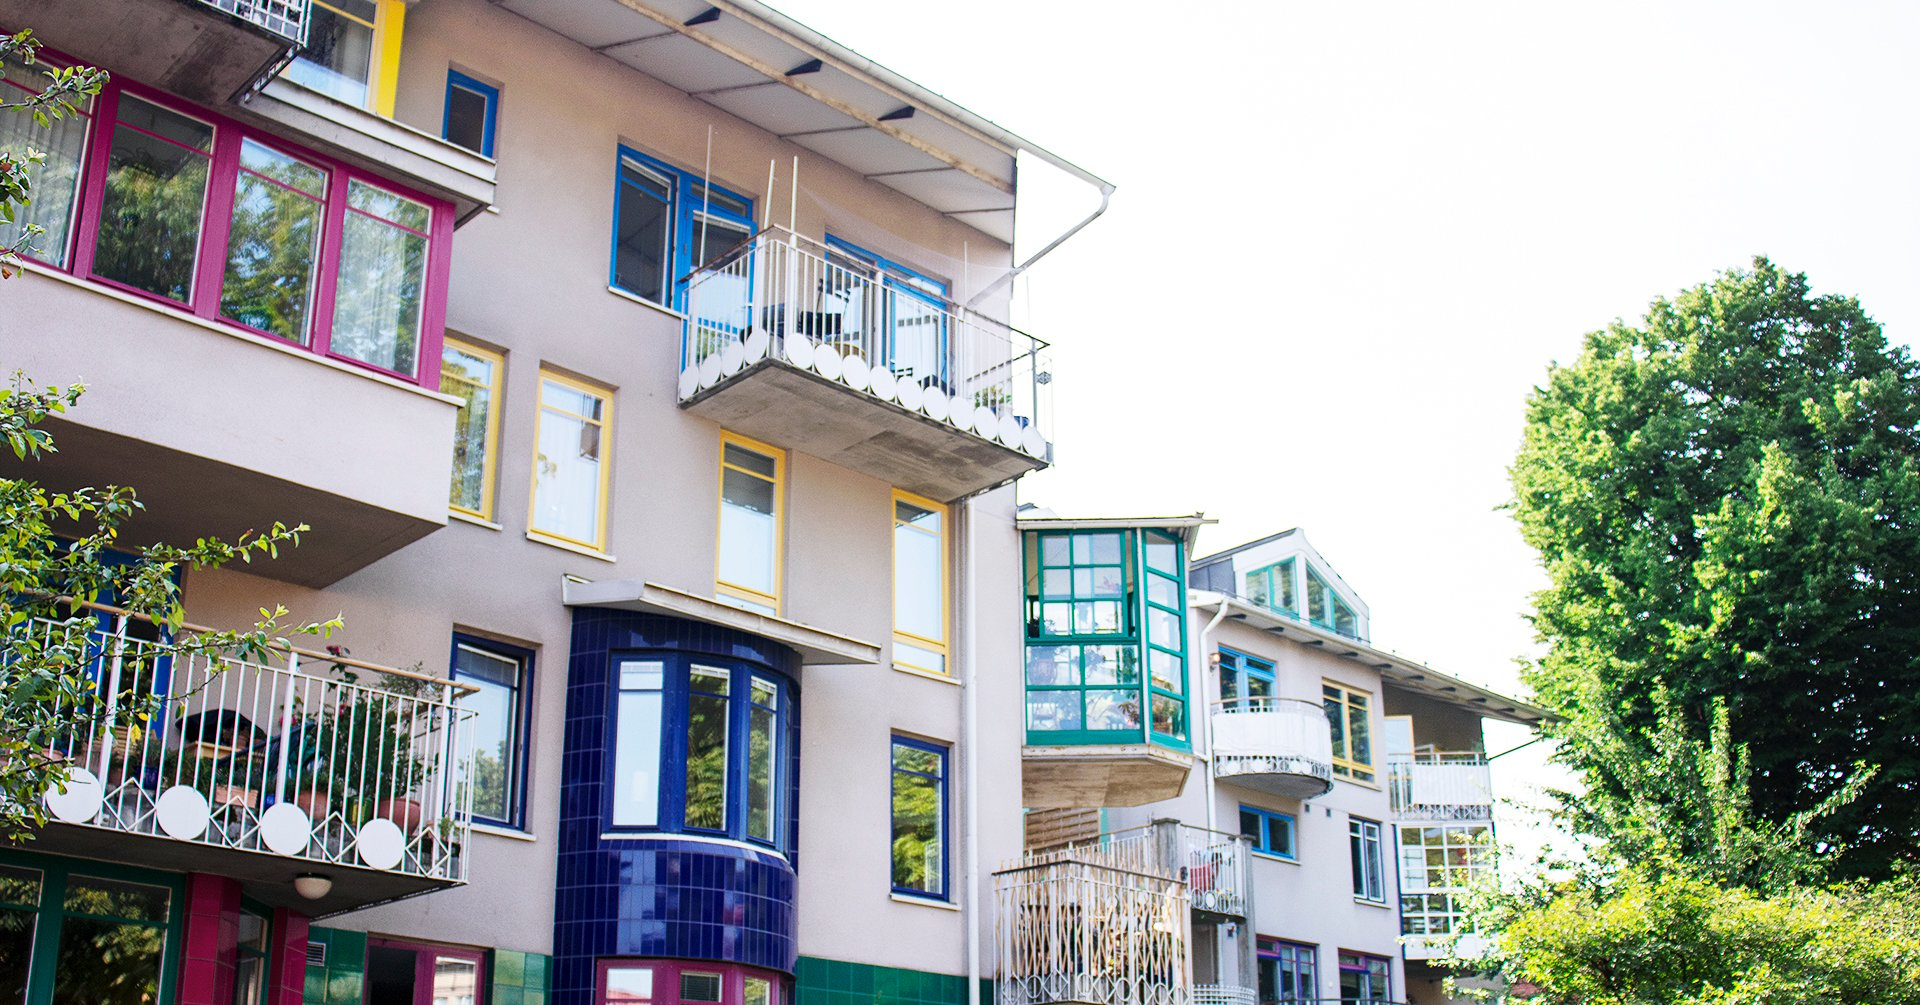 På bilden syns en bostadsrättsförenings fasad. Fasaden har många balkonger i olika färger och former.